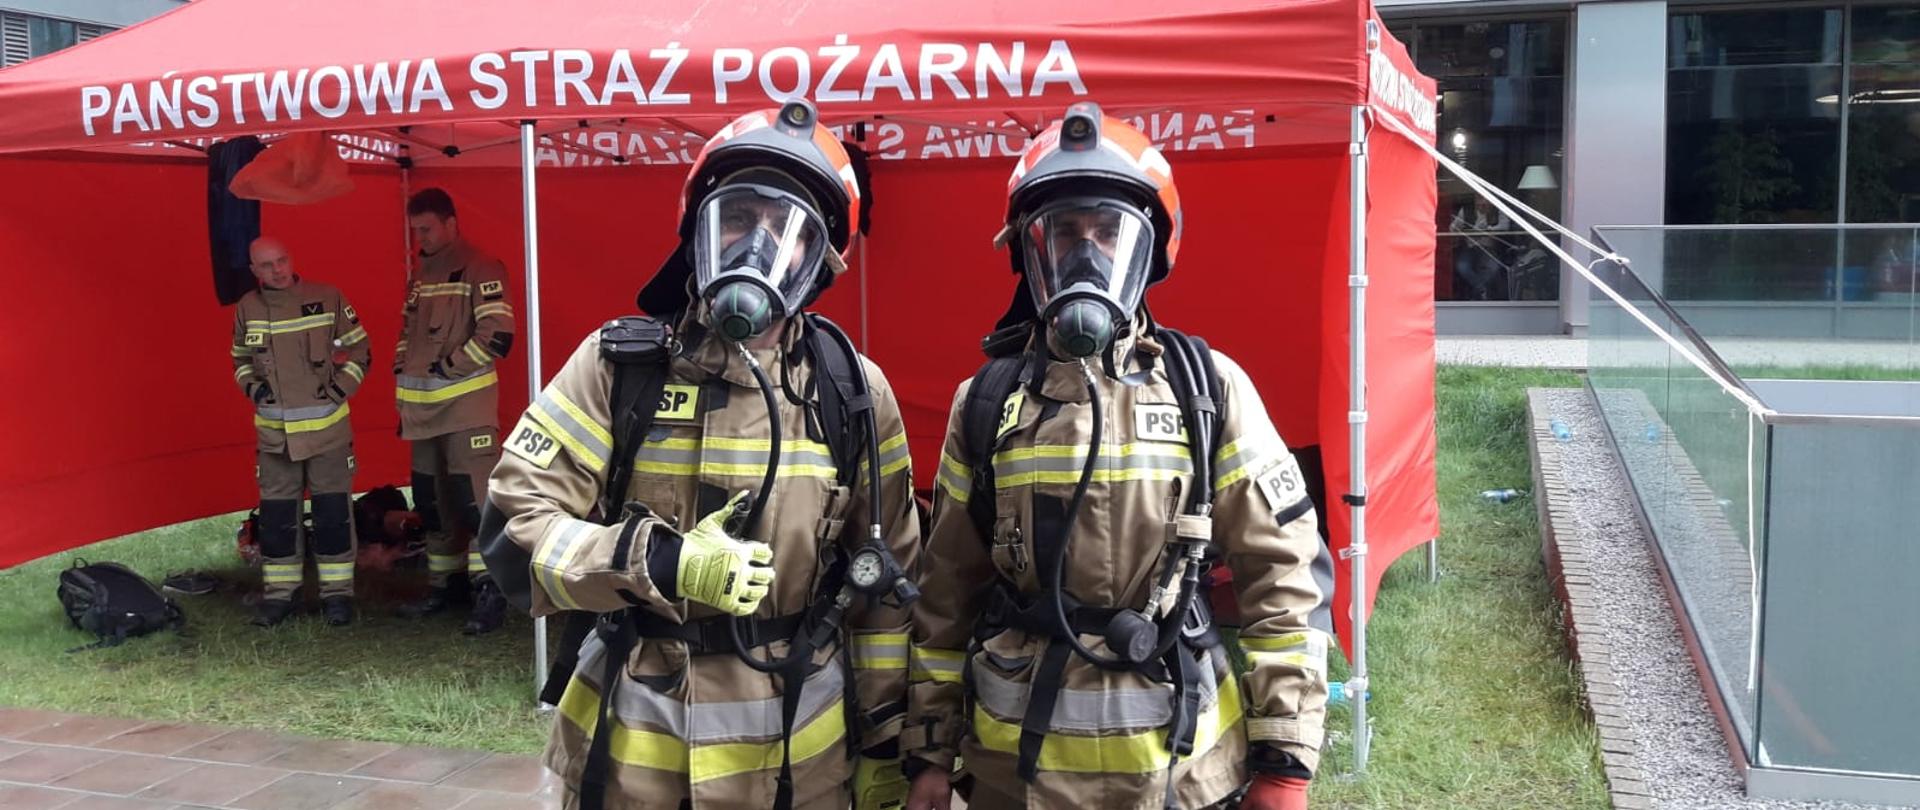 Dwoje strażaków w pełnym umundurowaniu z hełmami na głowie i maskami na twarzy pozuje do zdjęcia. W tle namiot koloru czerwonego. 